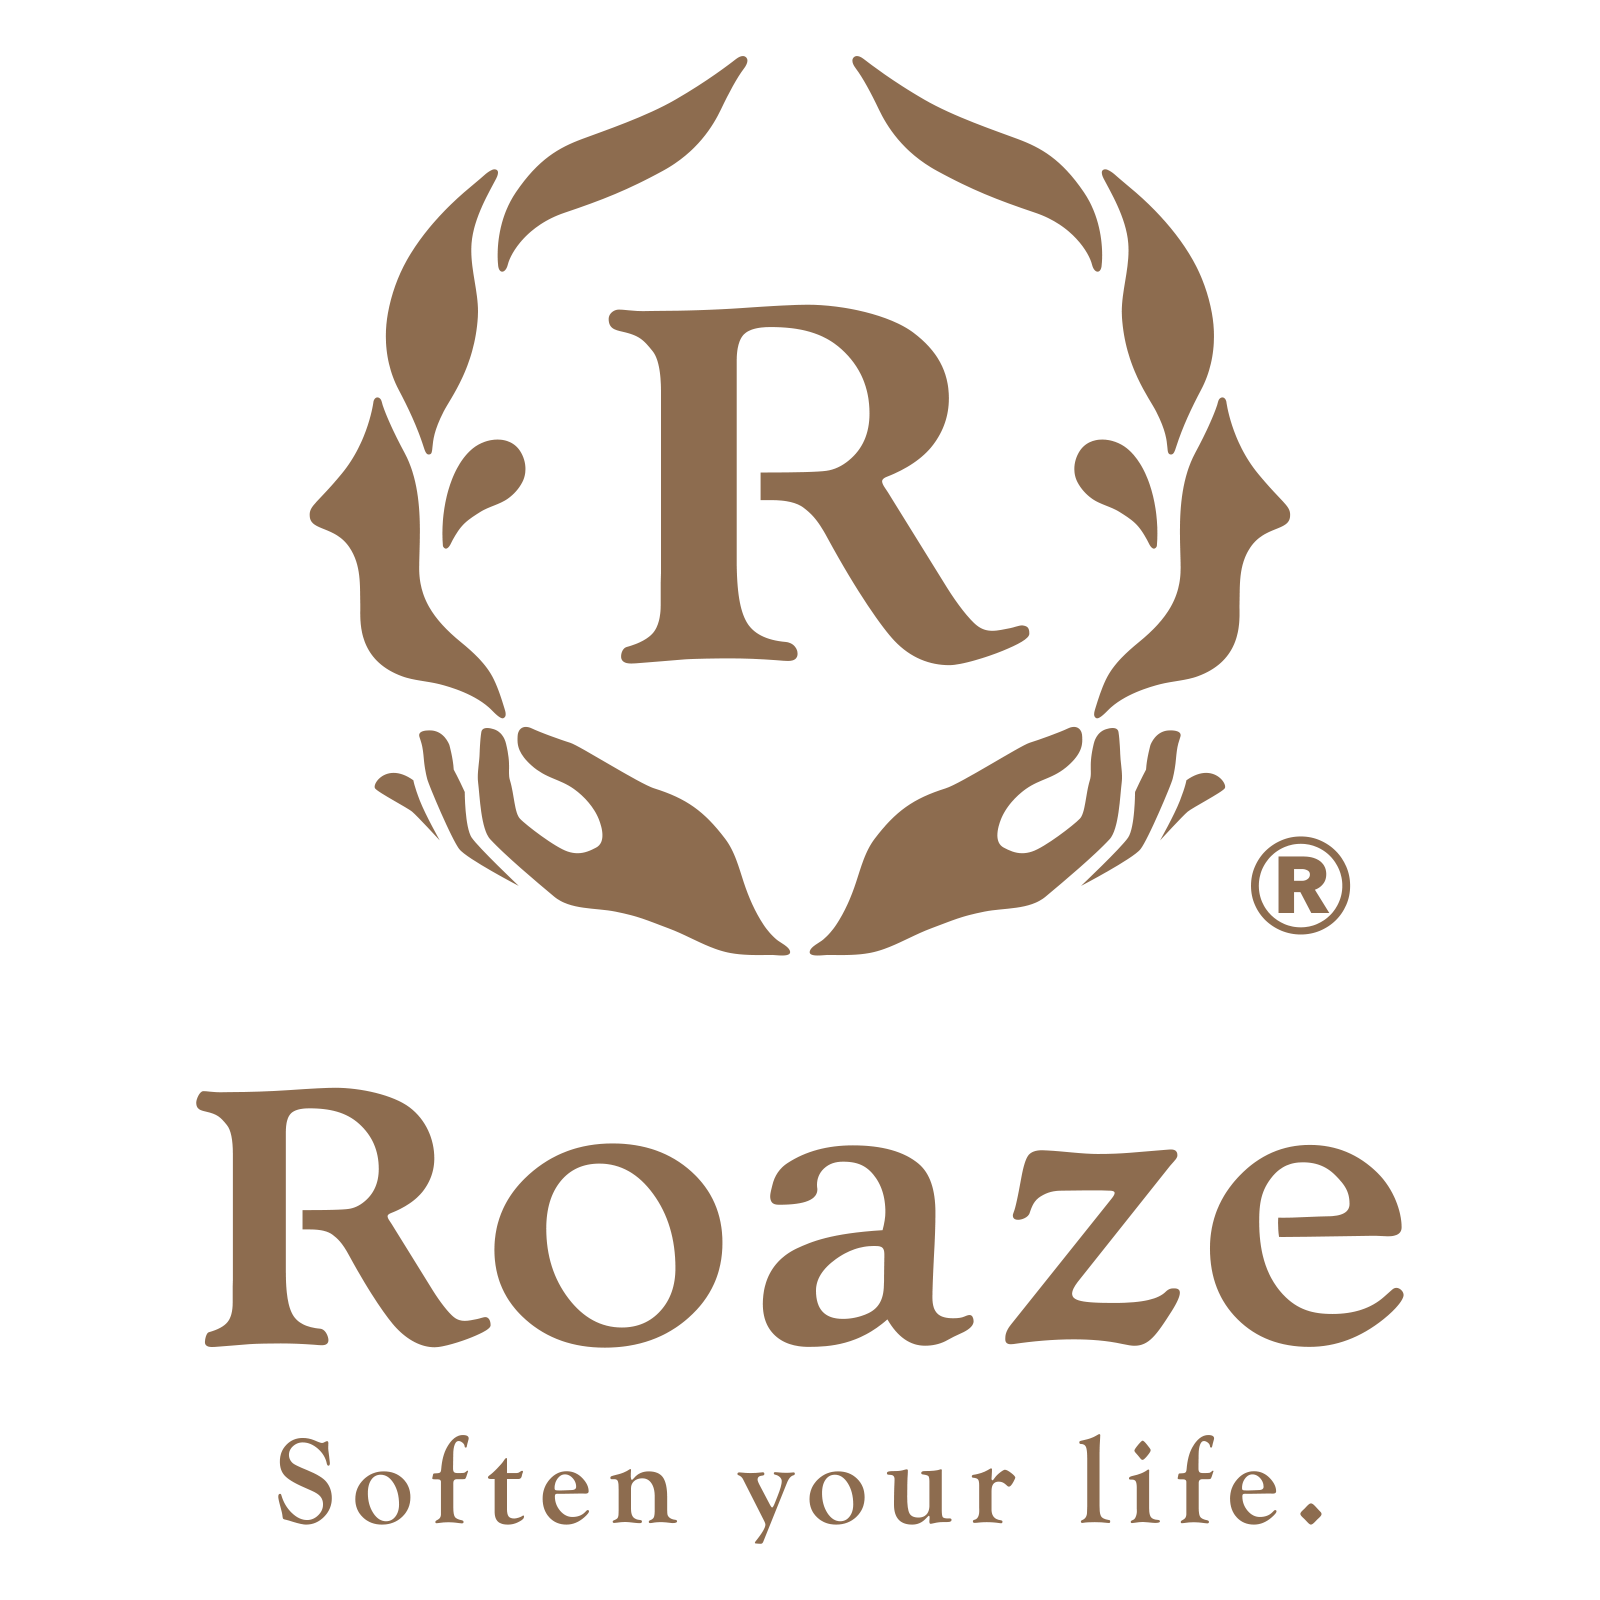 Roaze-ITOT Workbench SG Pte Ltd (202348808G)